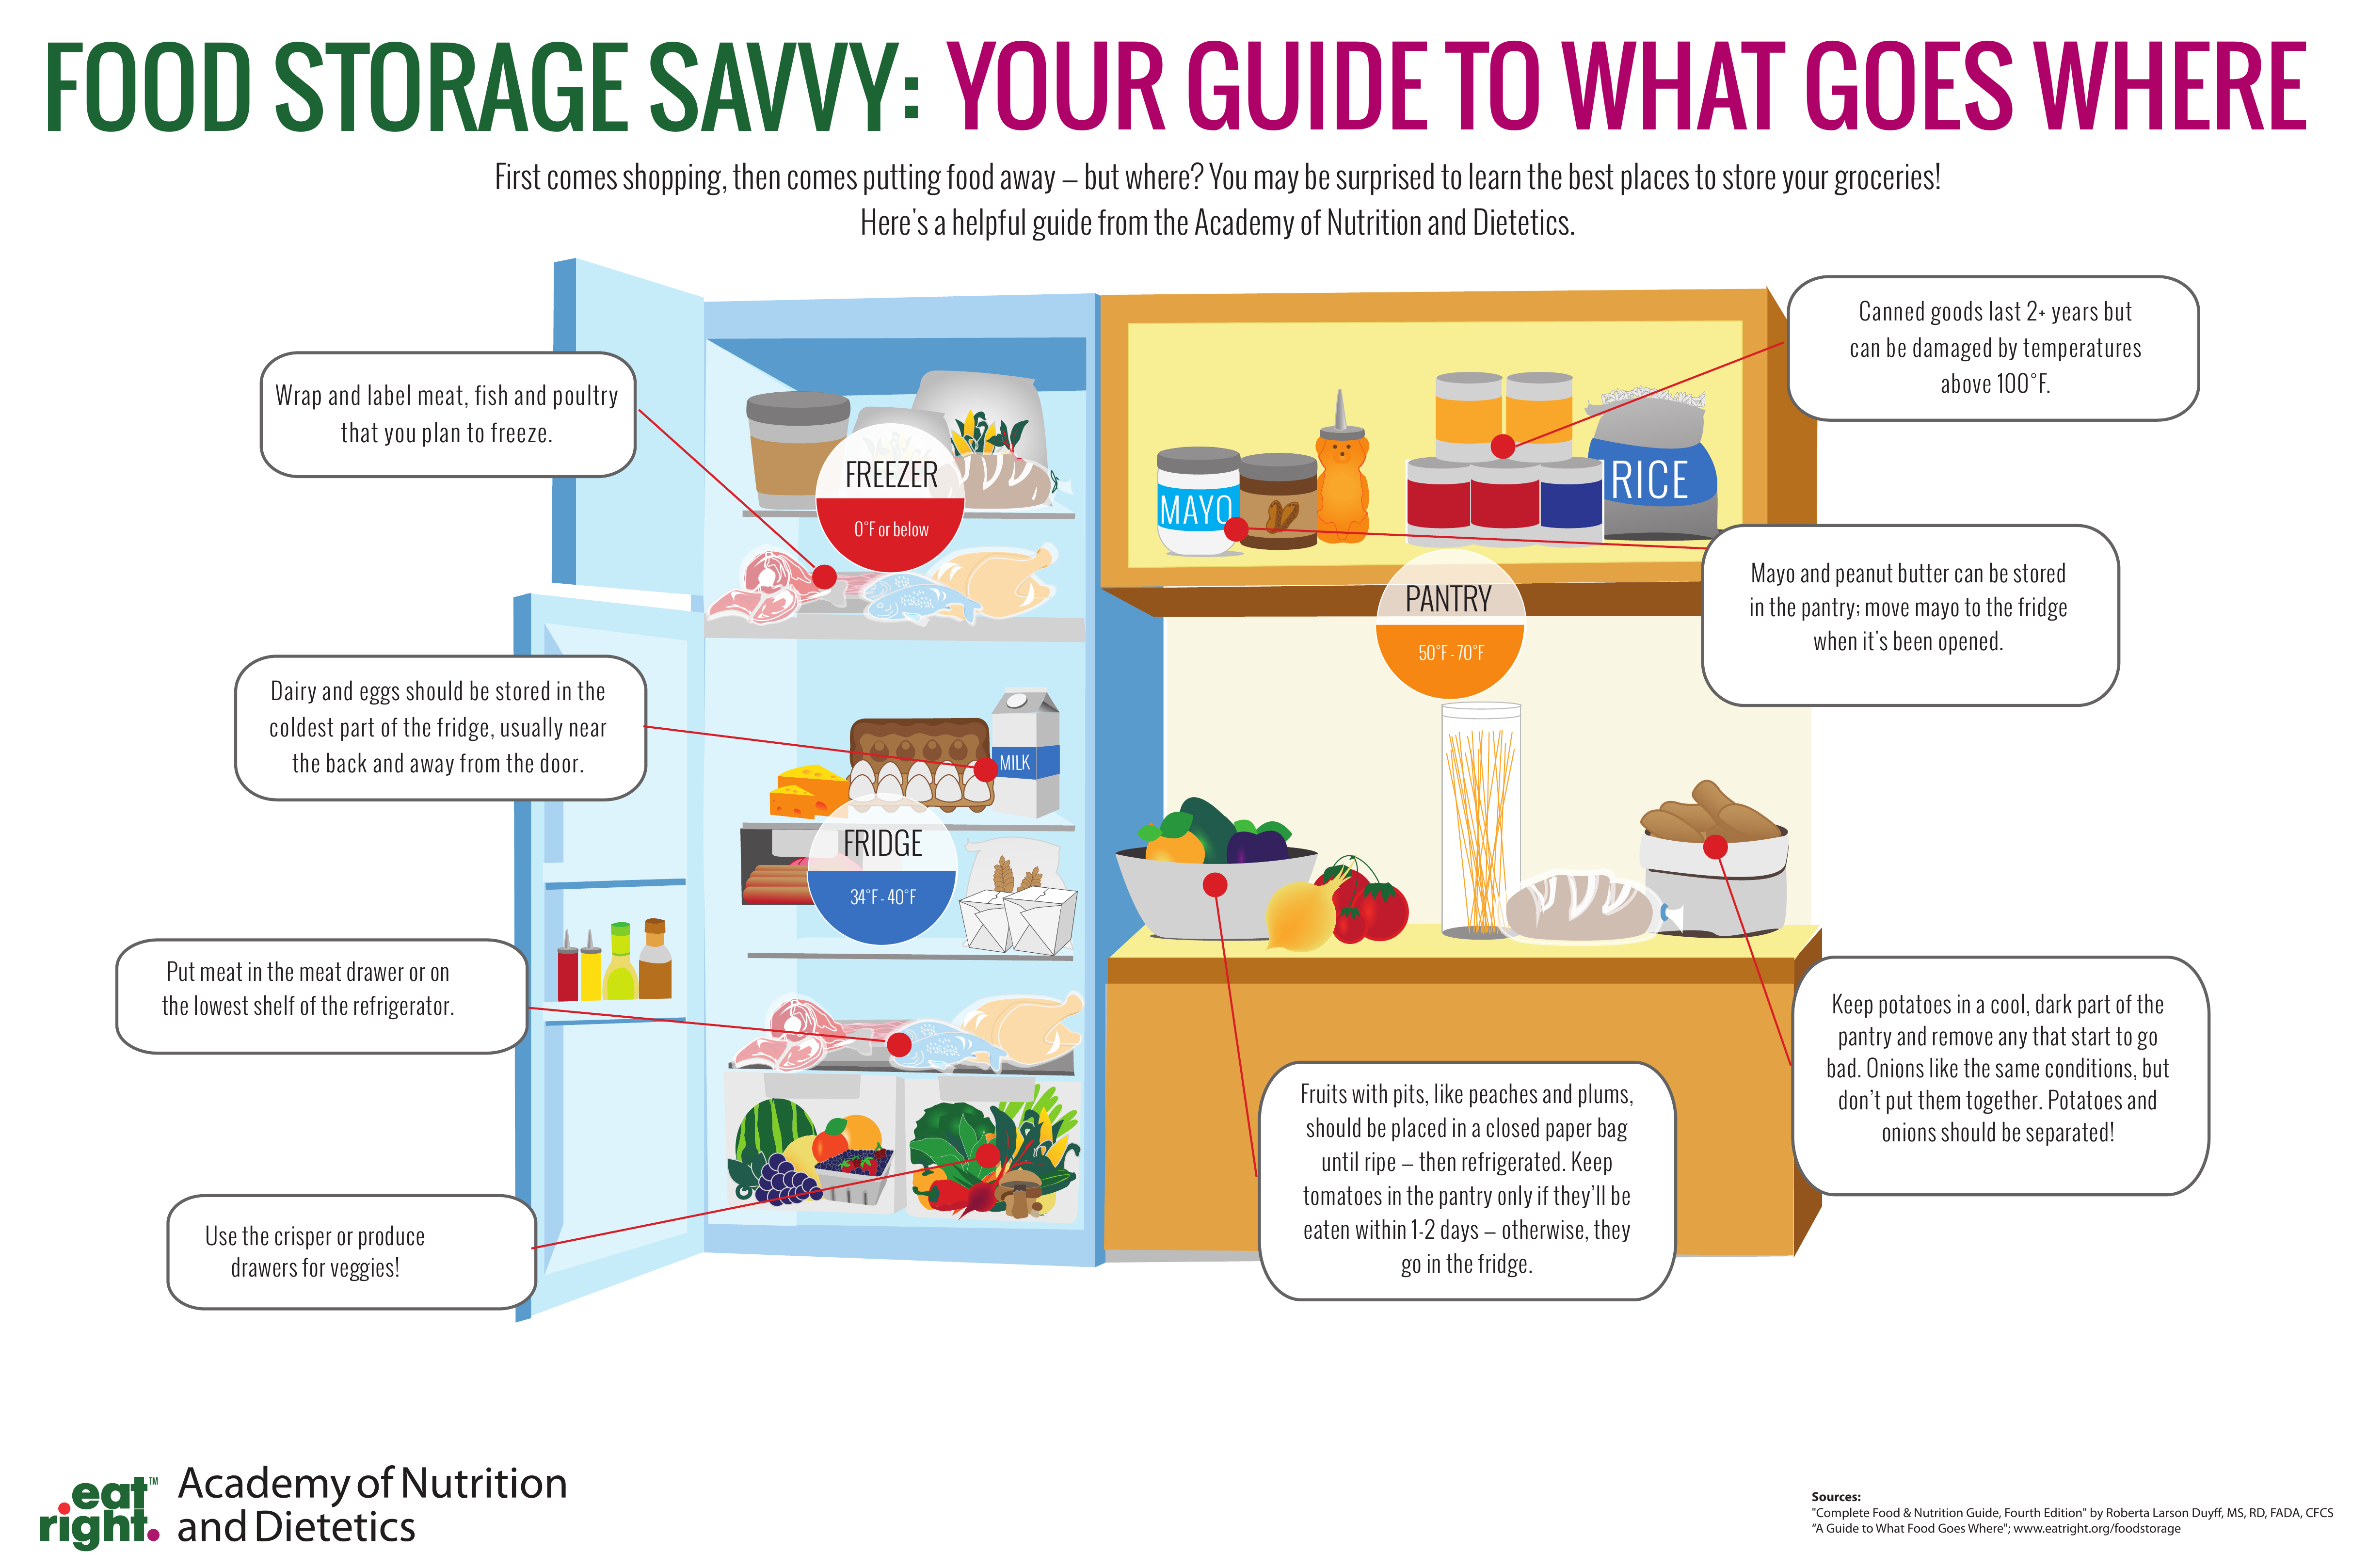 There are some eggs in the fridge. Инфографика холодильник. Инфографика питание. Инфографика хранение. Инфографика полезных продуктов.